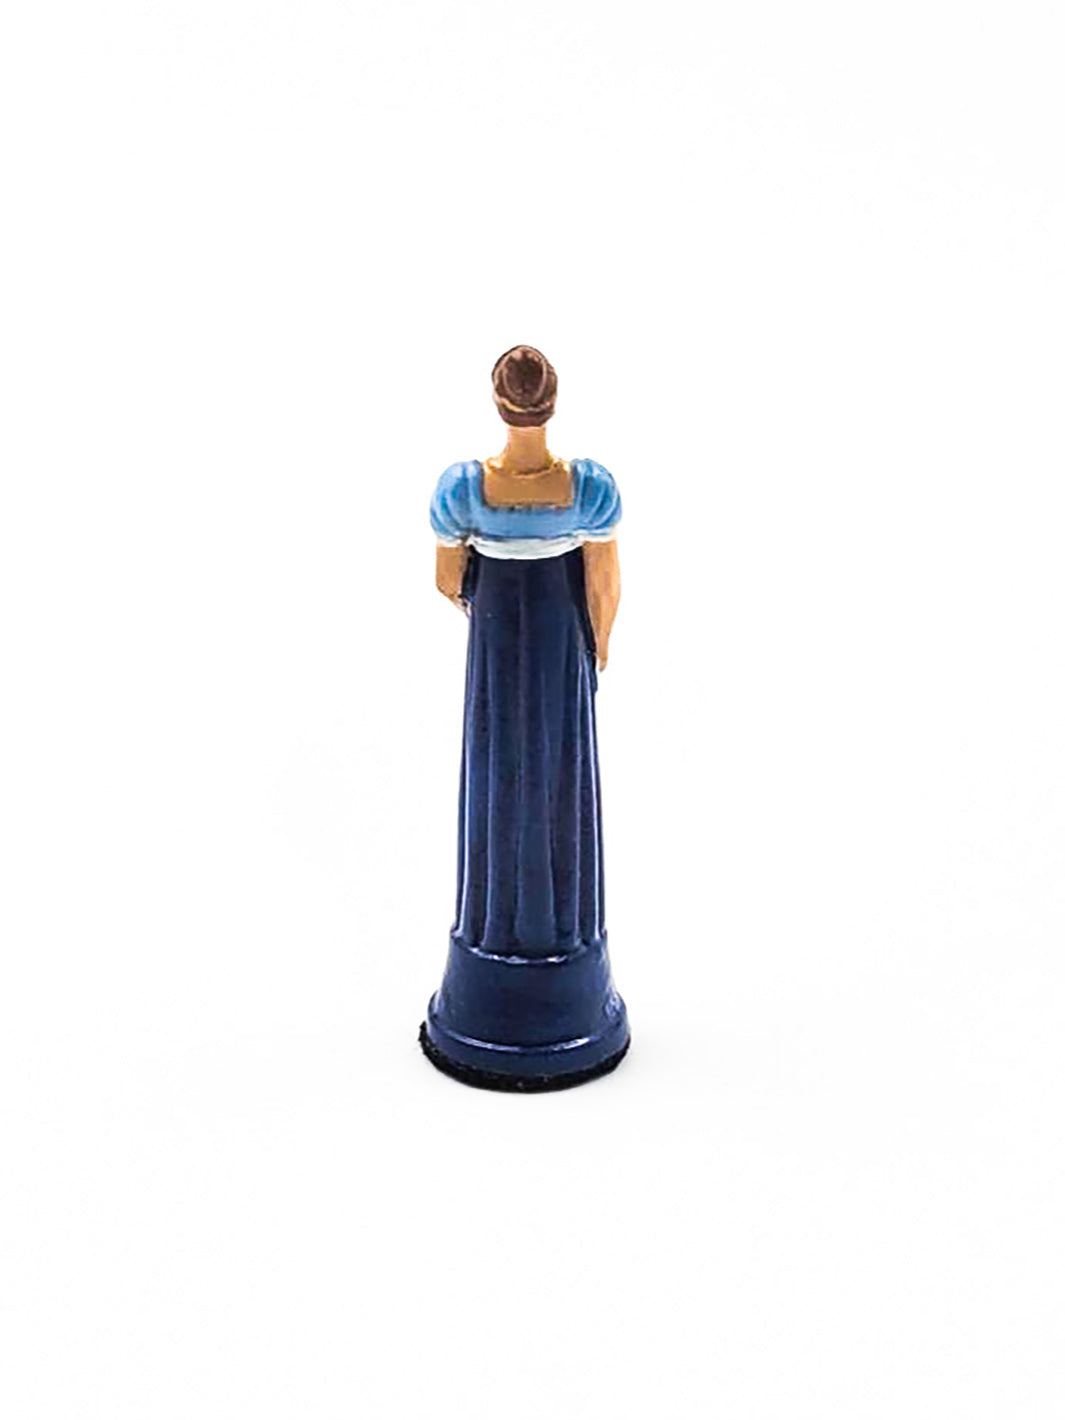 Piece Reine portant une robe bleue et blanche vue de derriere